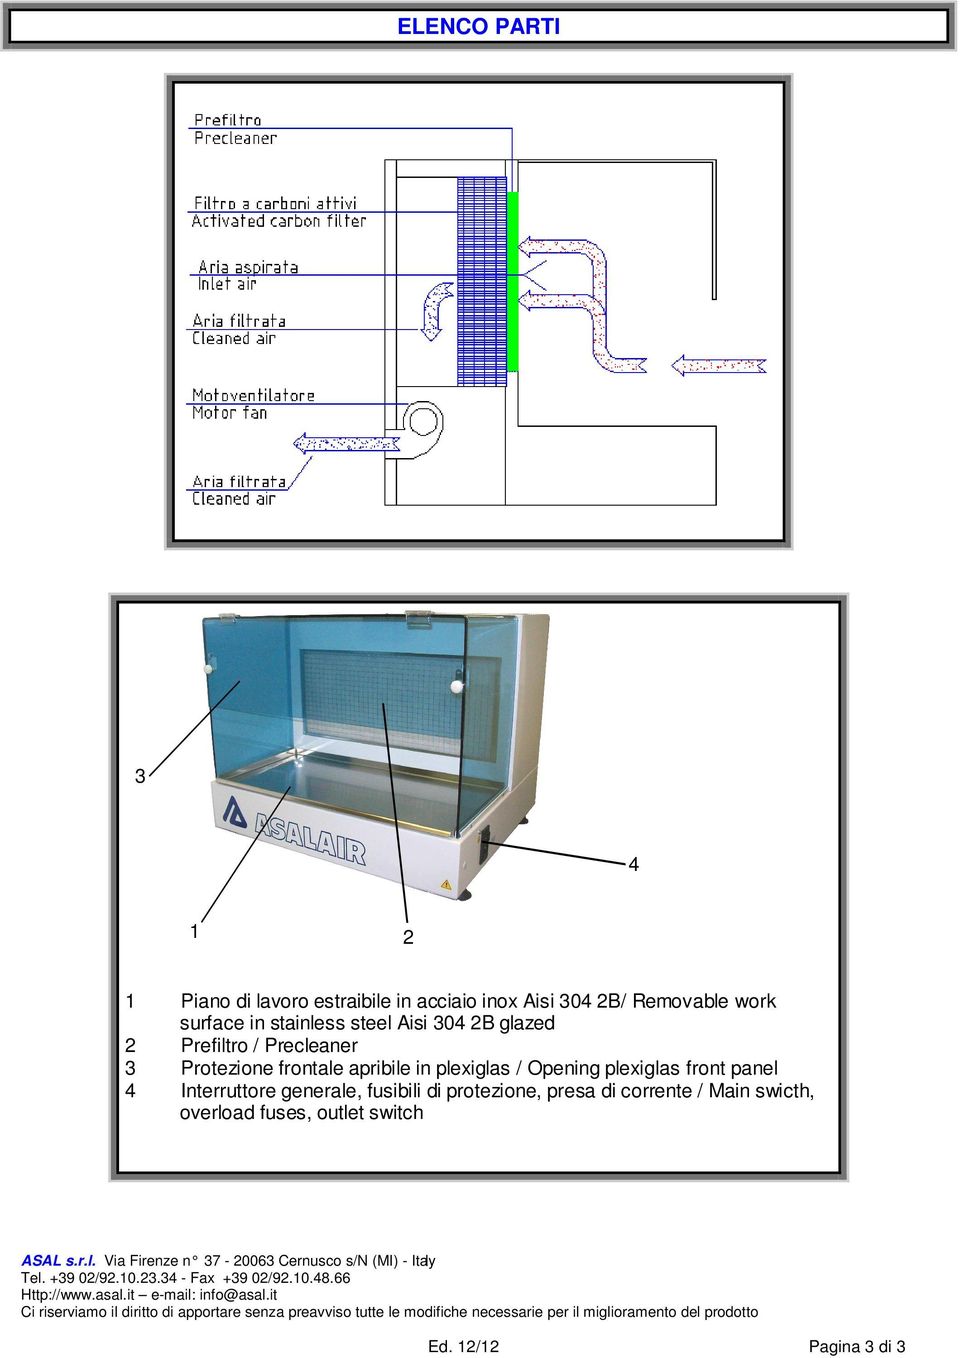 apribile in plexiglas / Opening plexiglas front panel 4 Interruttore generale, fusibili di